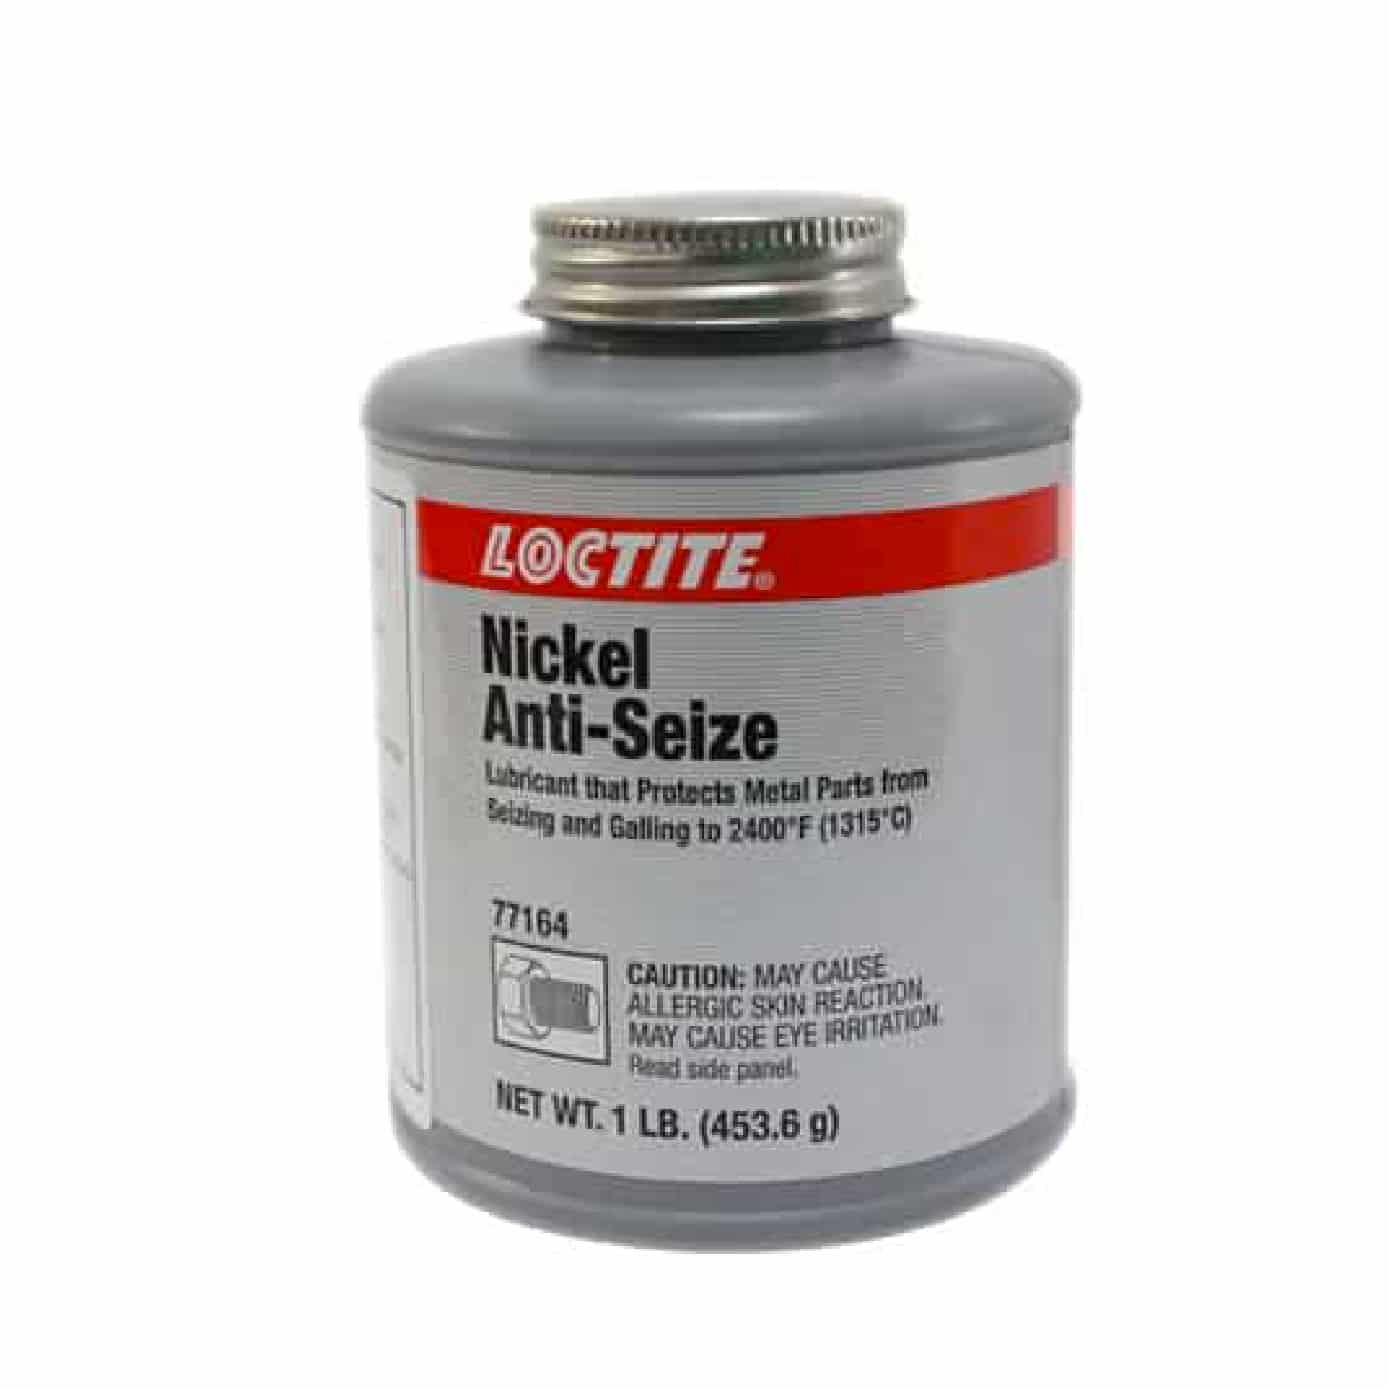 HC64663 - Antiaferrante Niquelado 500GR 77164 Loctite - LOCTITE